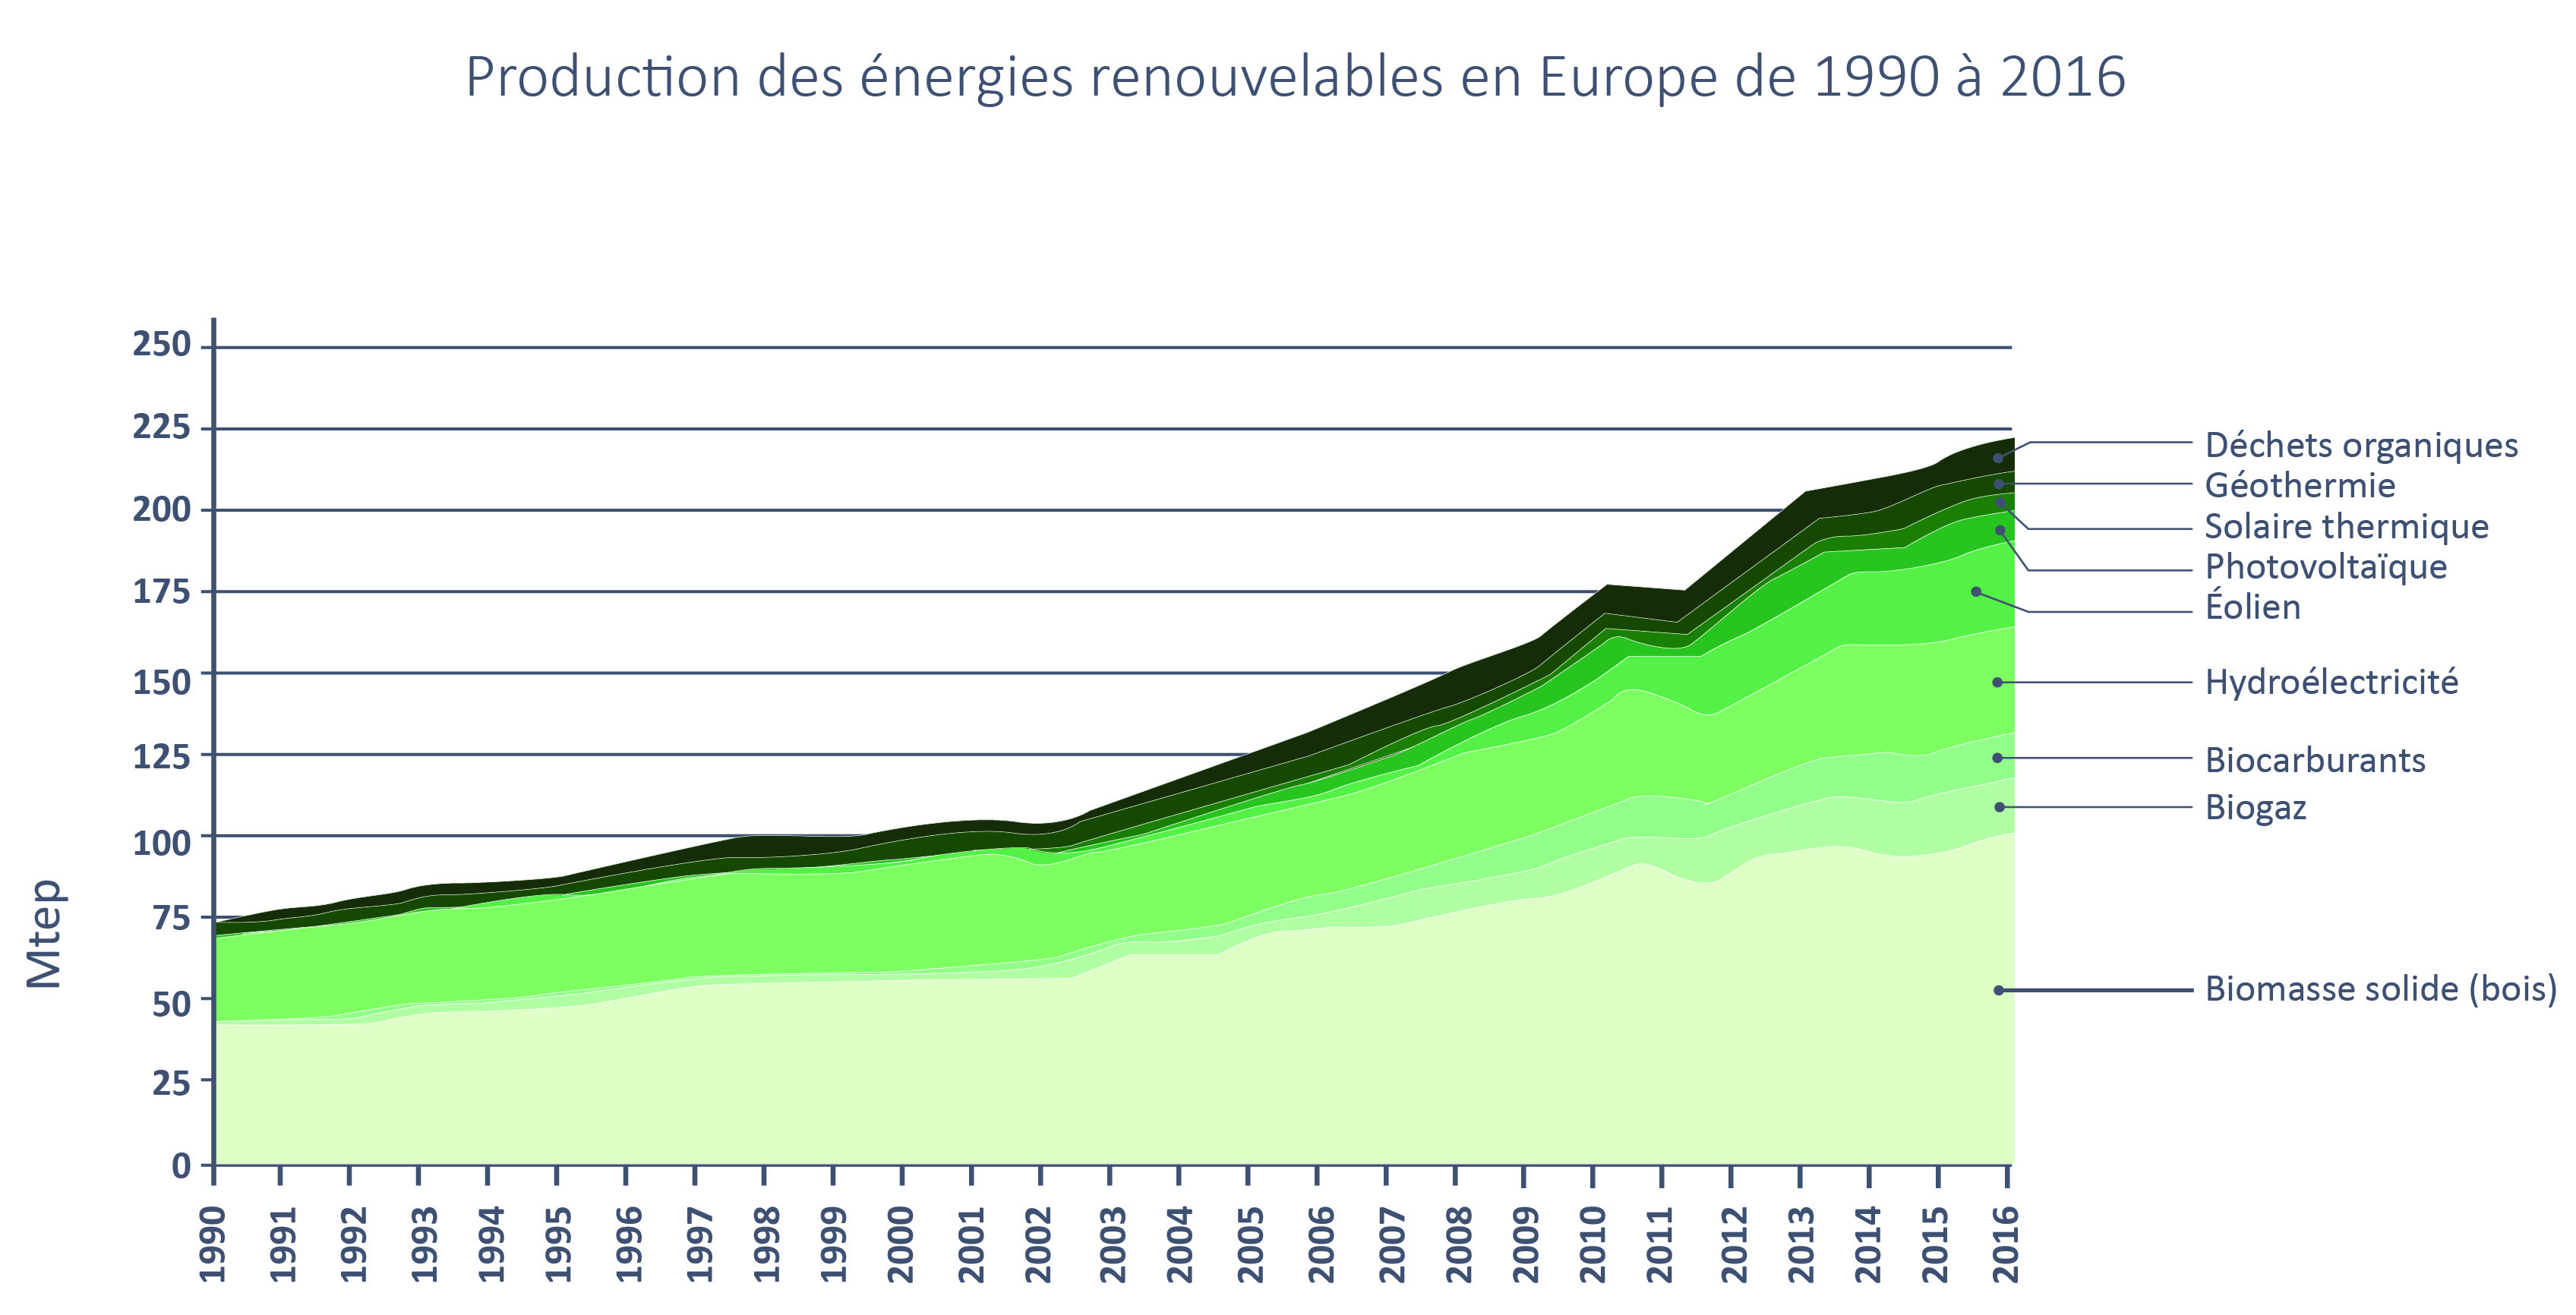 Tableau sur la production des énergies renouvelables en Europe de 1990 à 2016 